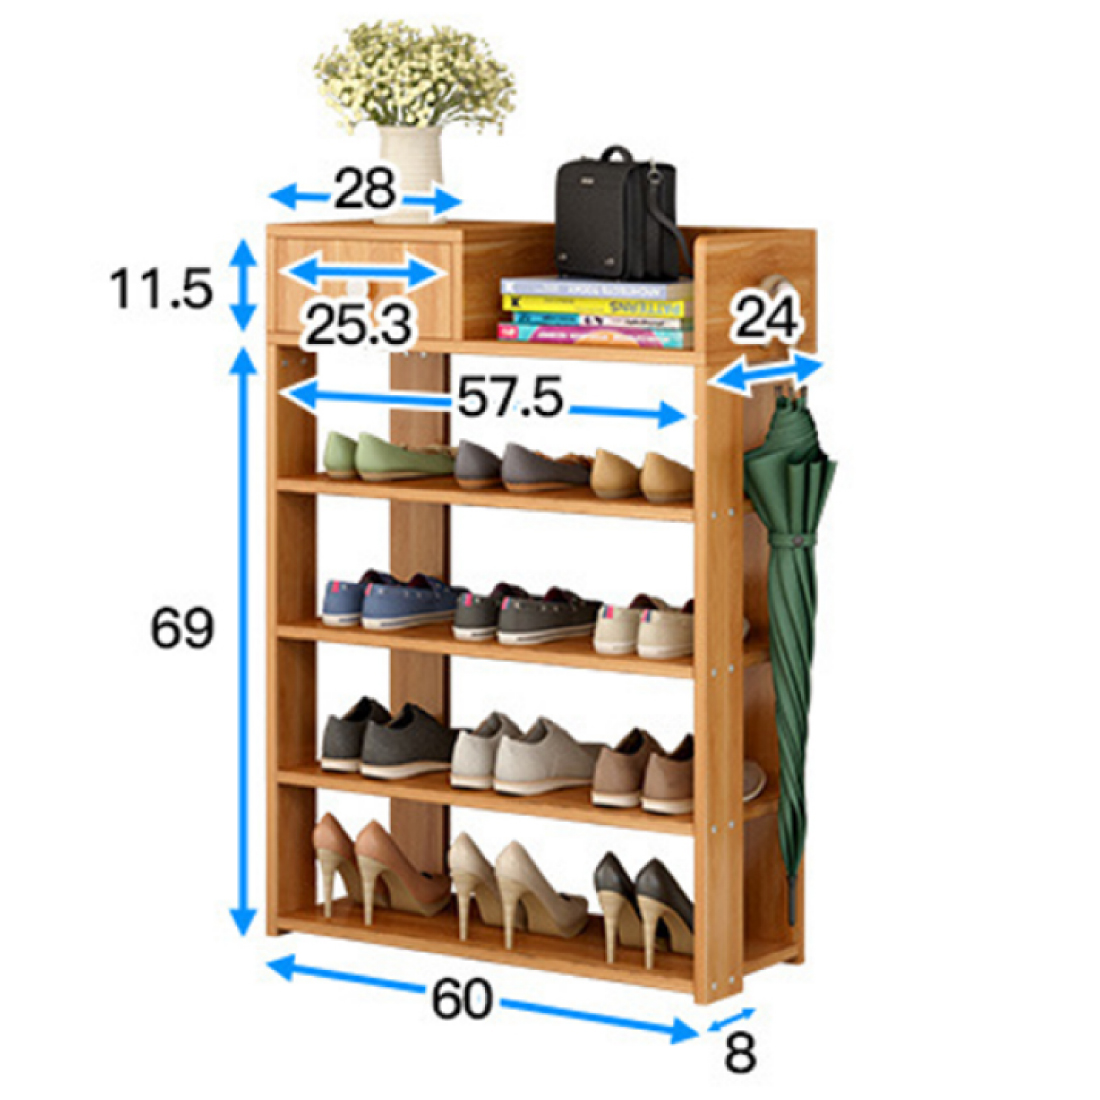 Kệ giày bằng gỗ, A240 kiểu đứng 5 tầng, cao 80cm x rộng 60cm x sâu 24cm, gỗ tự nhiên được xử lý trống mối mọt, tủ giày đa tầng để được nhiều loại giày dép, guốc, kệ giày đa năng với tủ nhỏ chứa nhiều đồ dụng nhỏ, treo thêm chìa khóa, ô dù, áo mưa